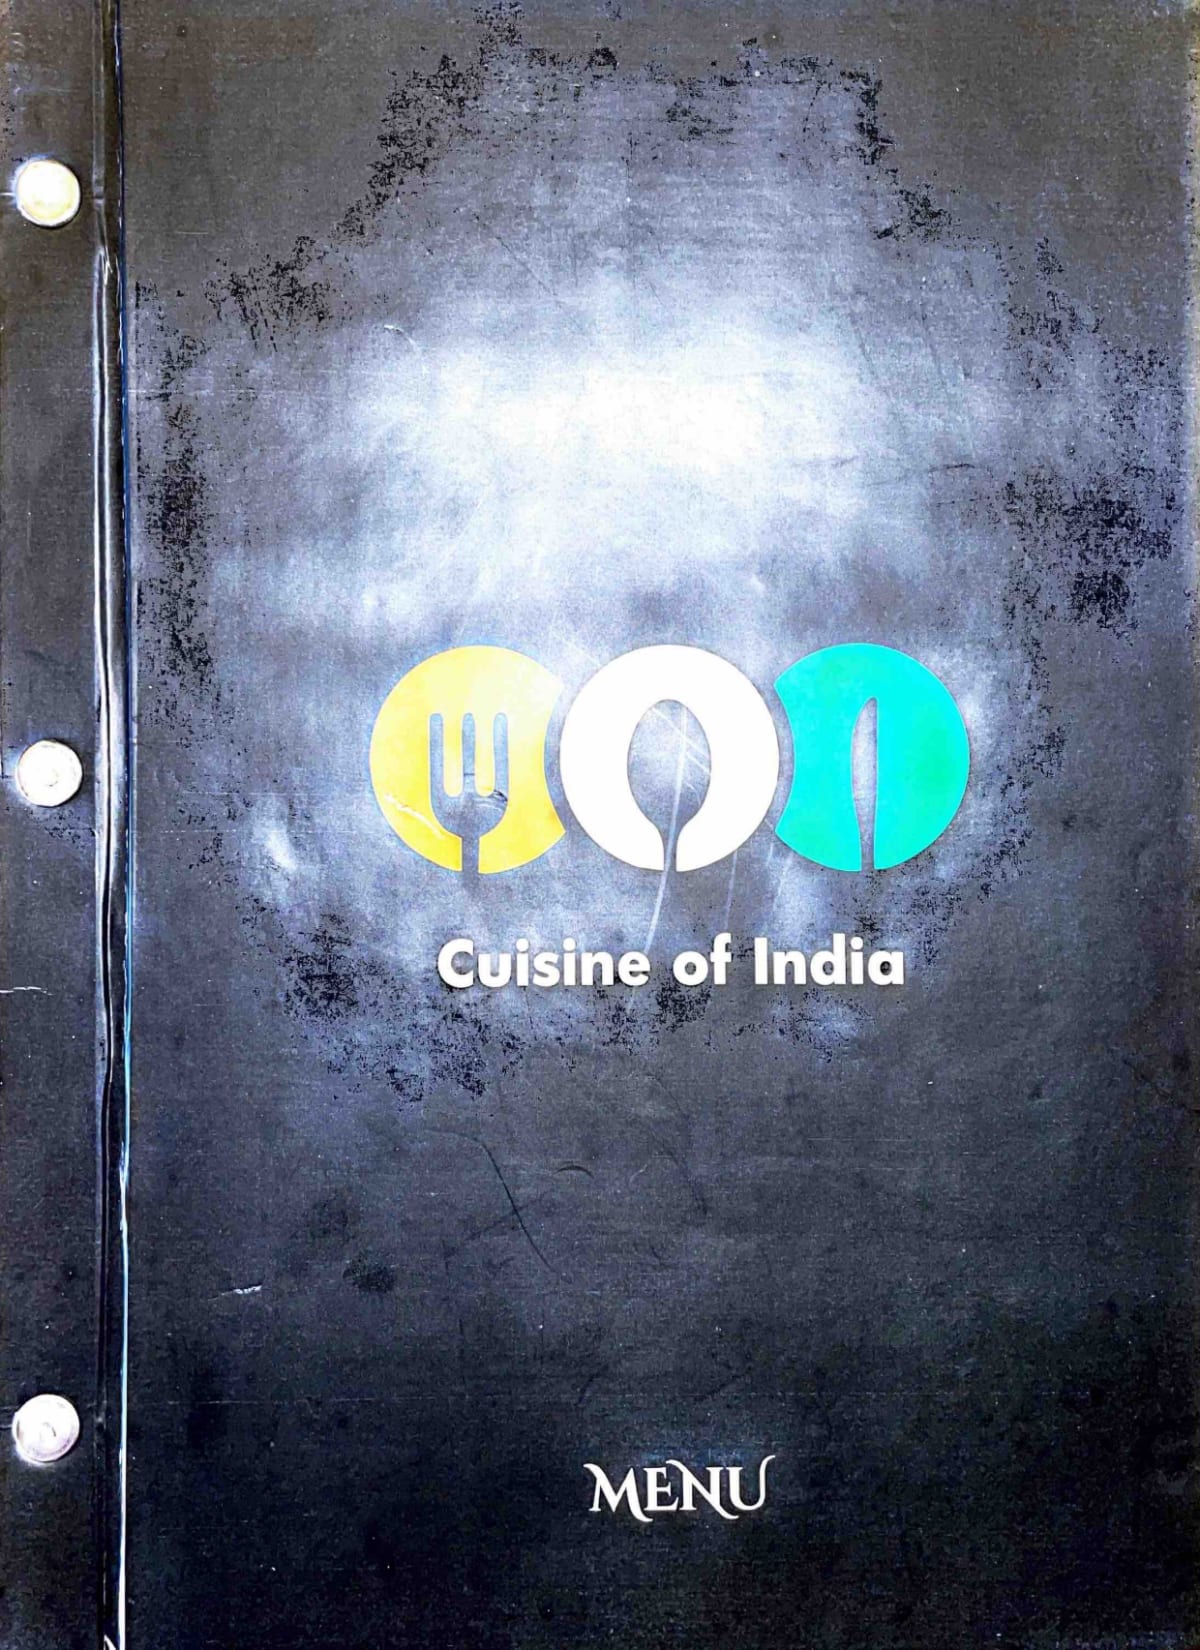 Cuisine of India menu